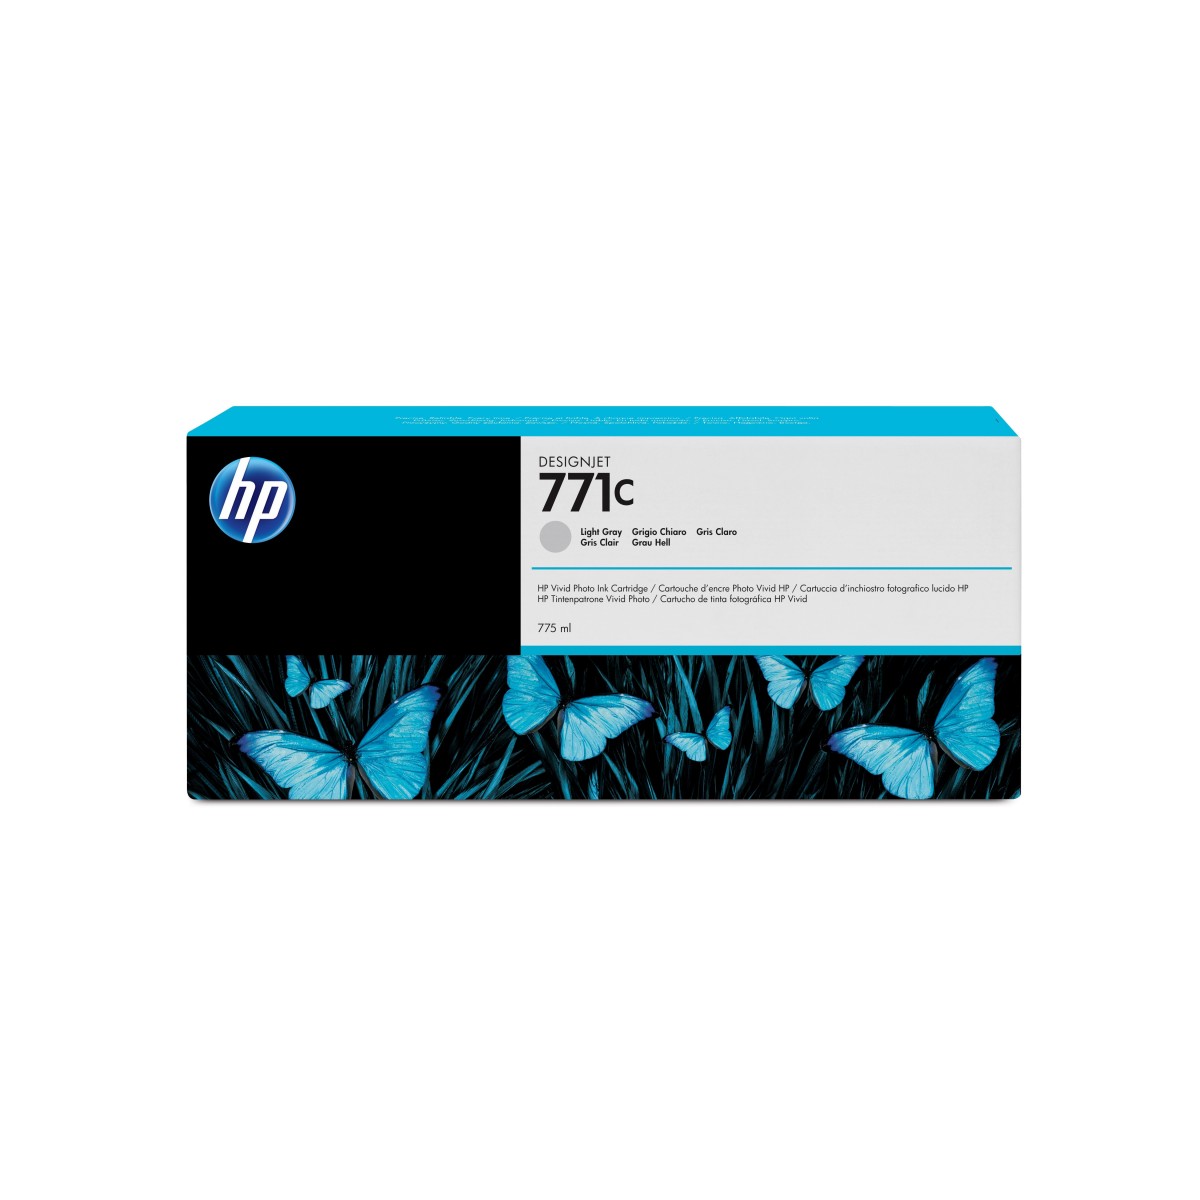 HP DesignJet 771C - Ink Cartridge Original - Matte/photo black - 775 ml